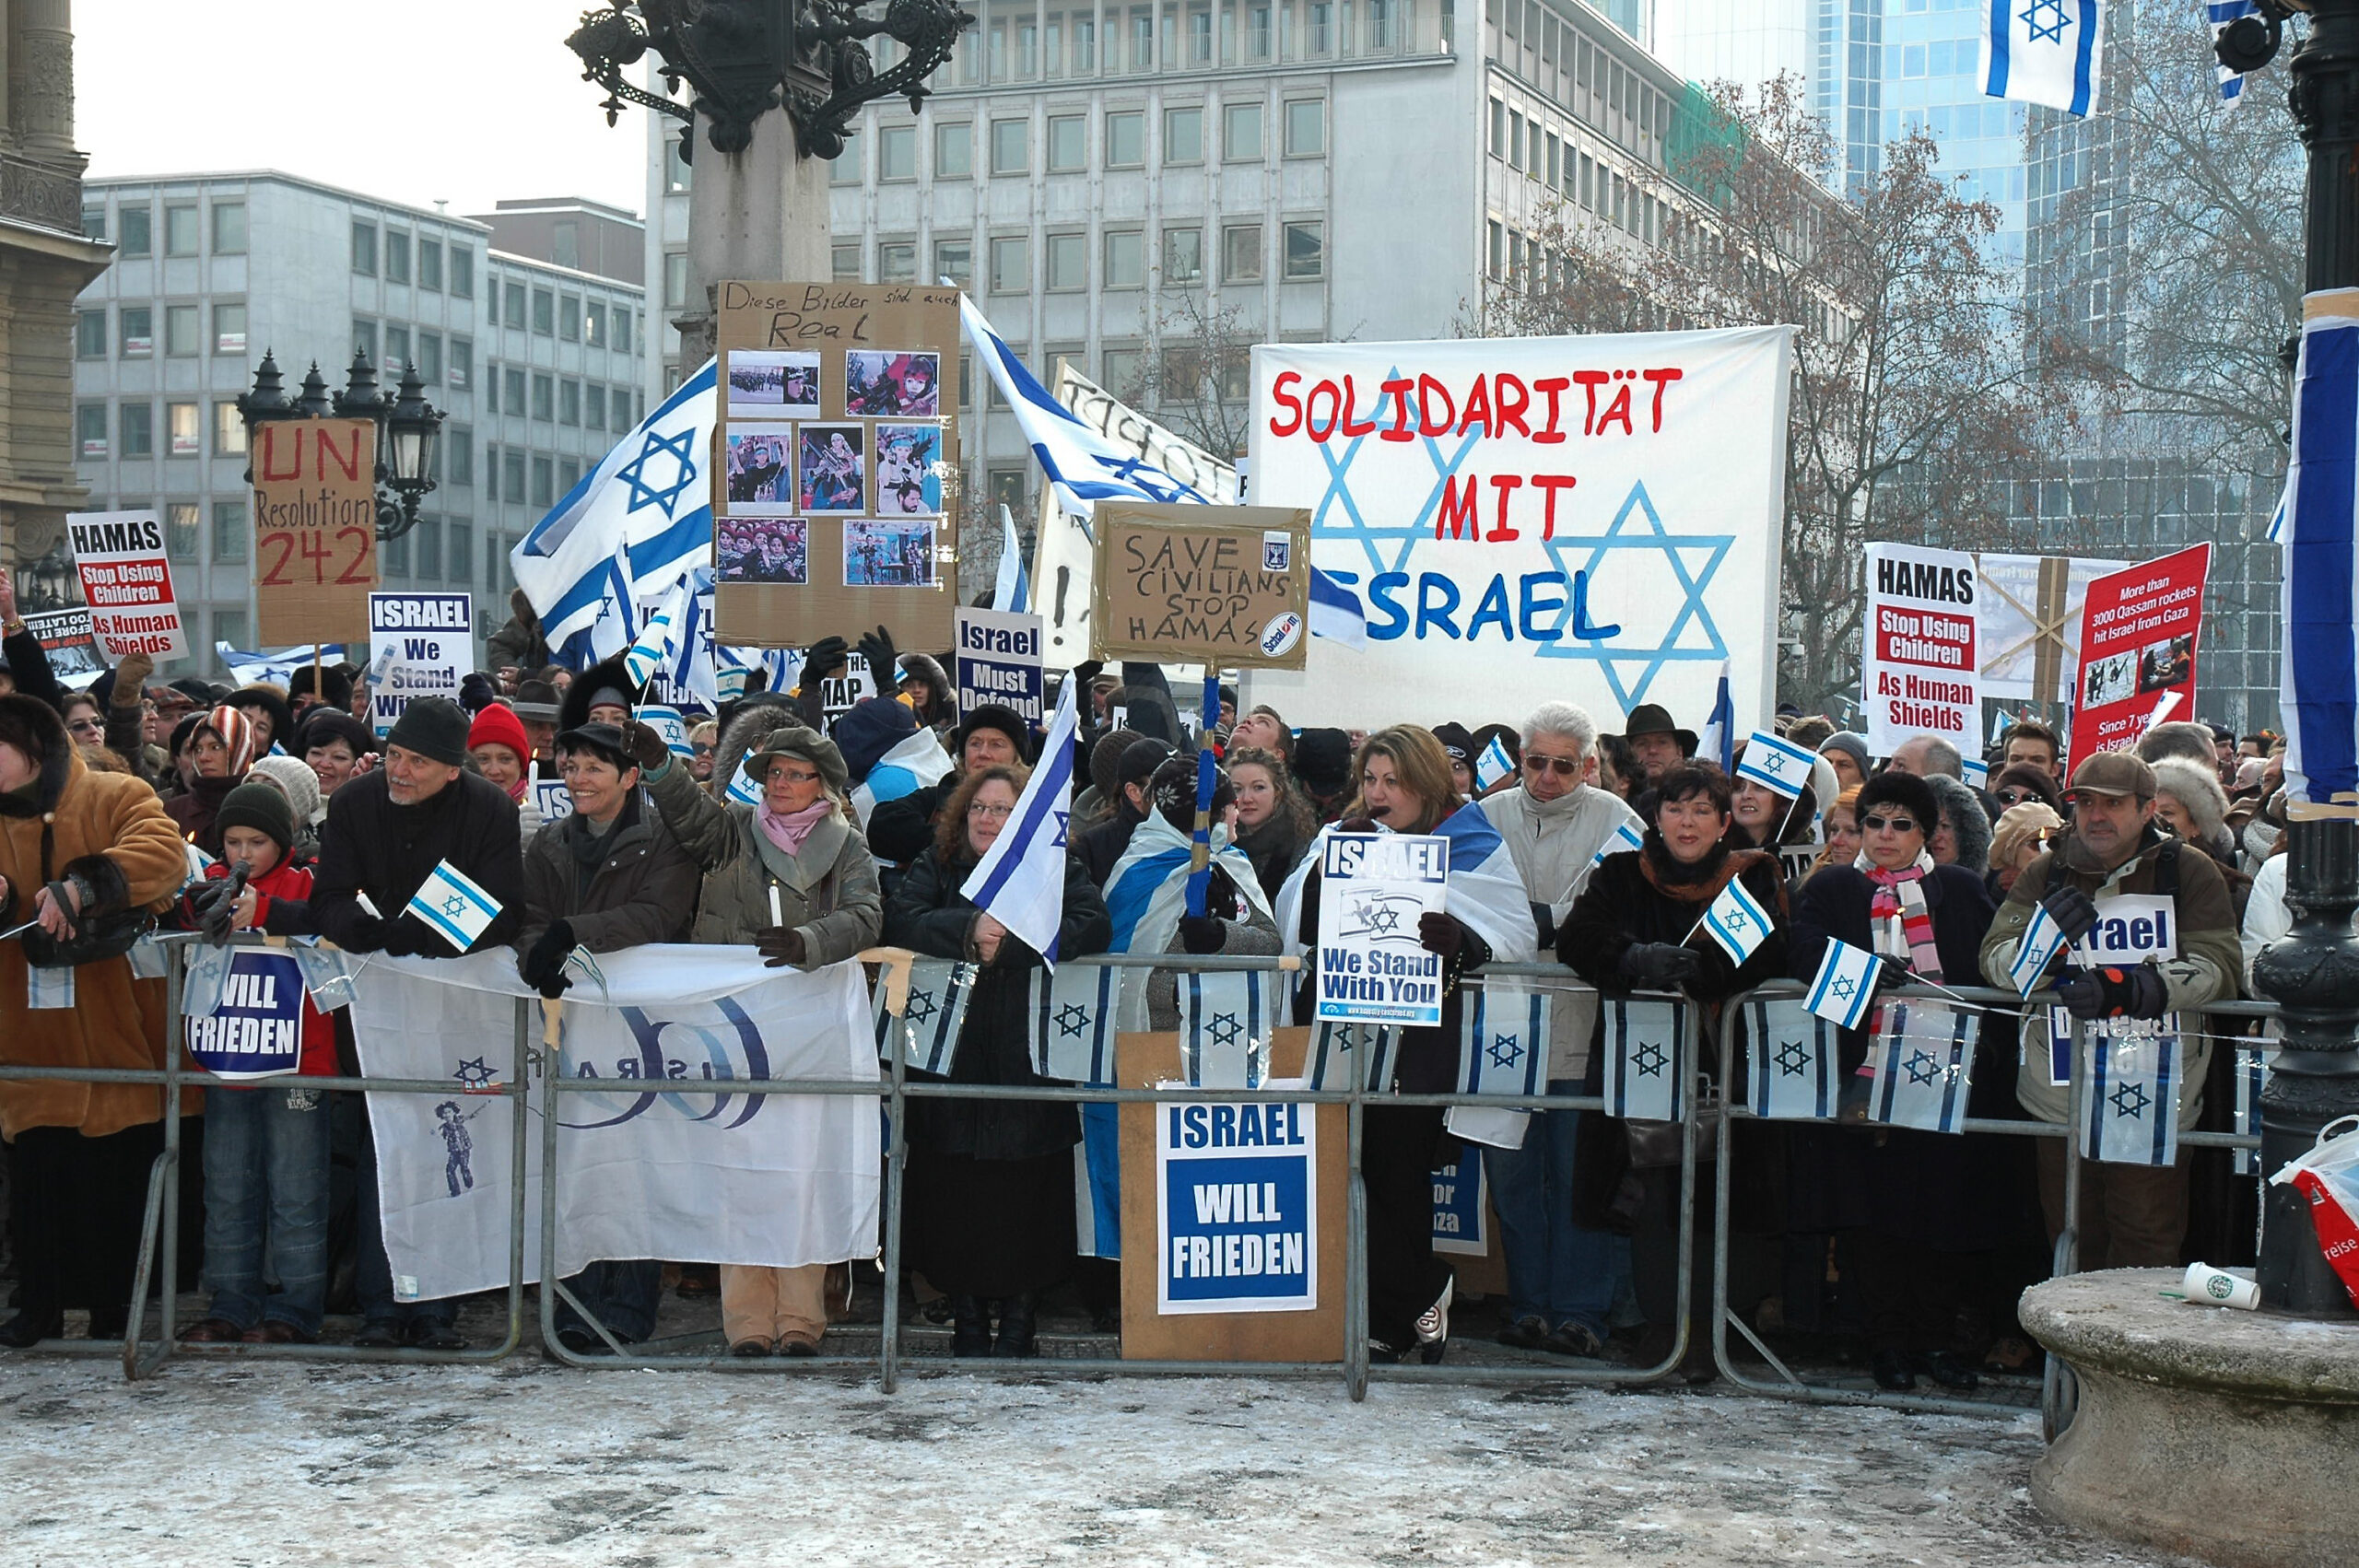 Participants à une manifestation. Collection de la communauté juive de Wiesbaden